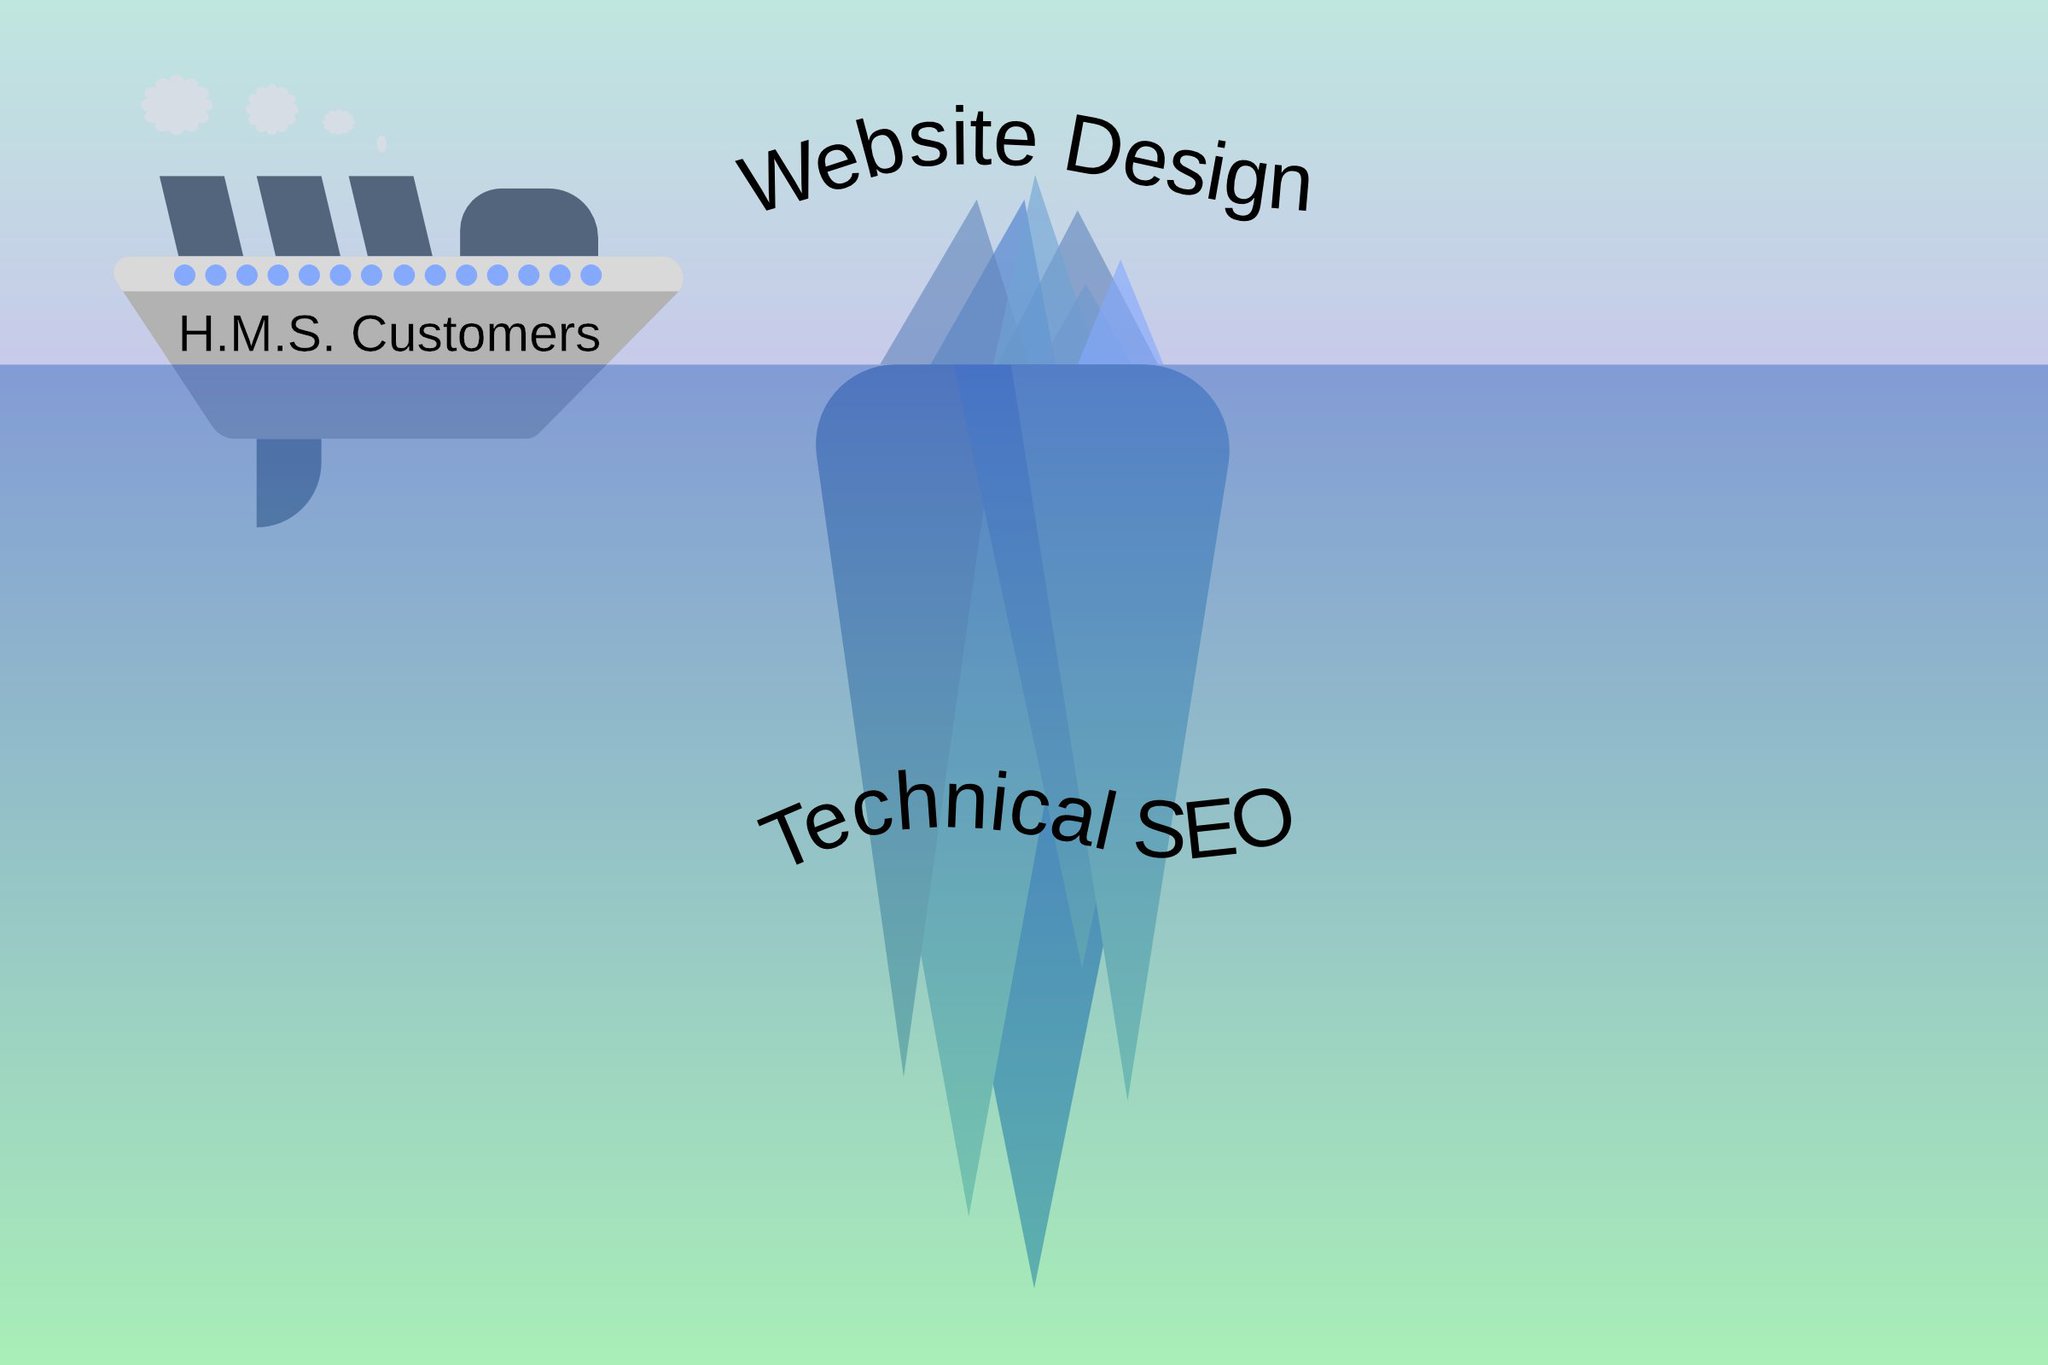 Web Design - Technical SEO - Iceberg analogy